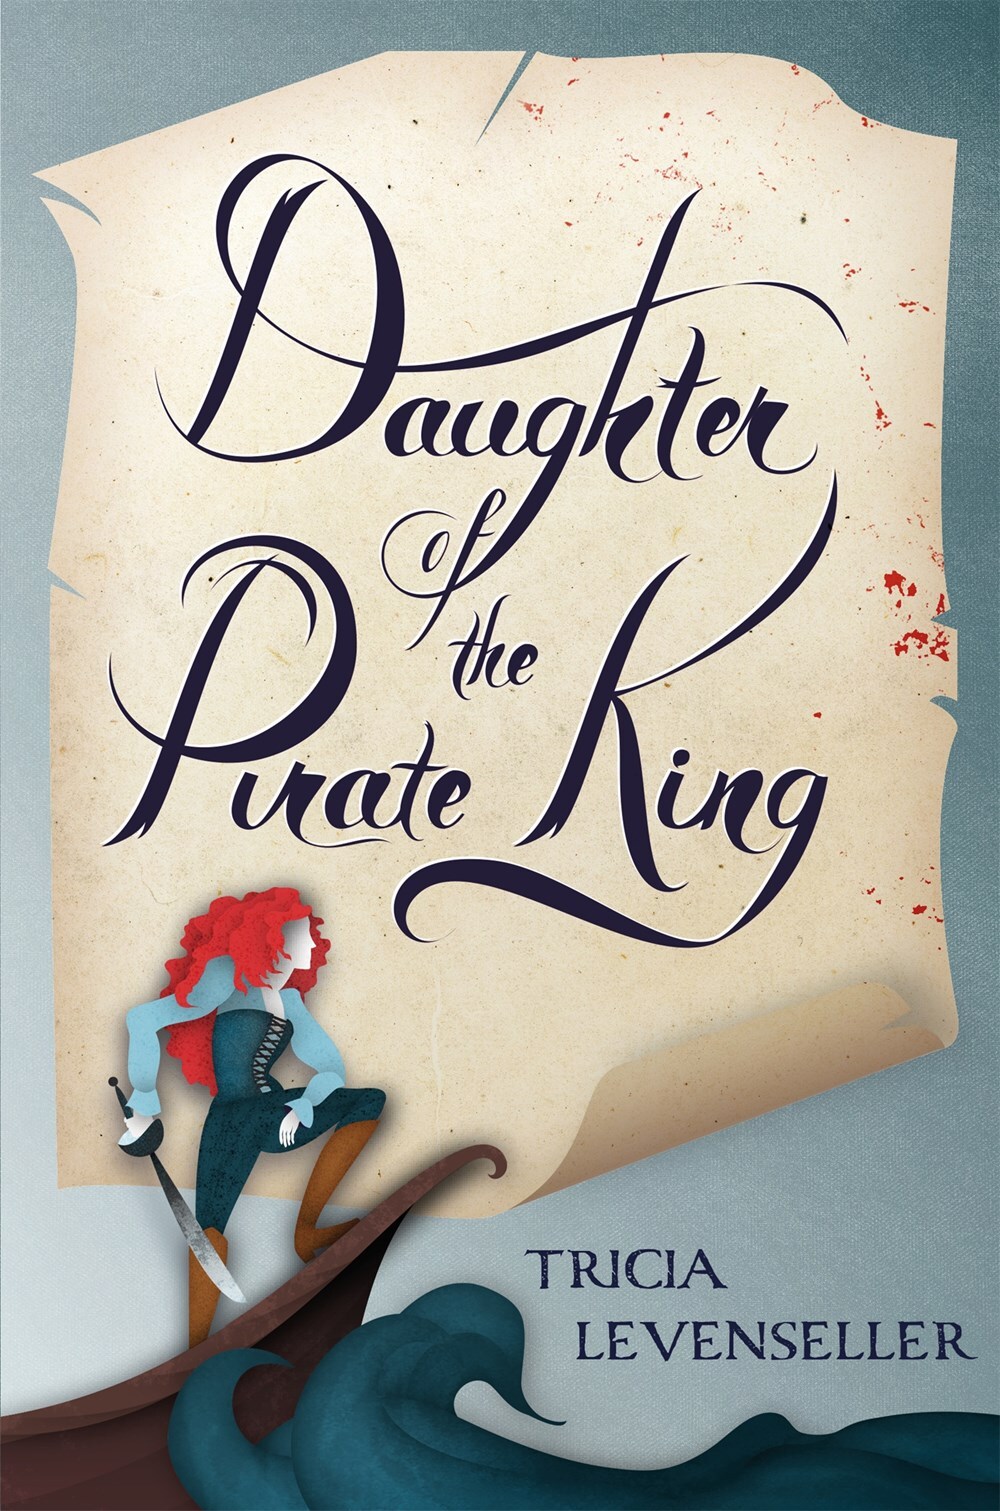 ⚓️ La fille du roi pirate - tome 1 ⚓️ ⚓️ tu l'as lu ? Tu en as pensé q